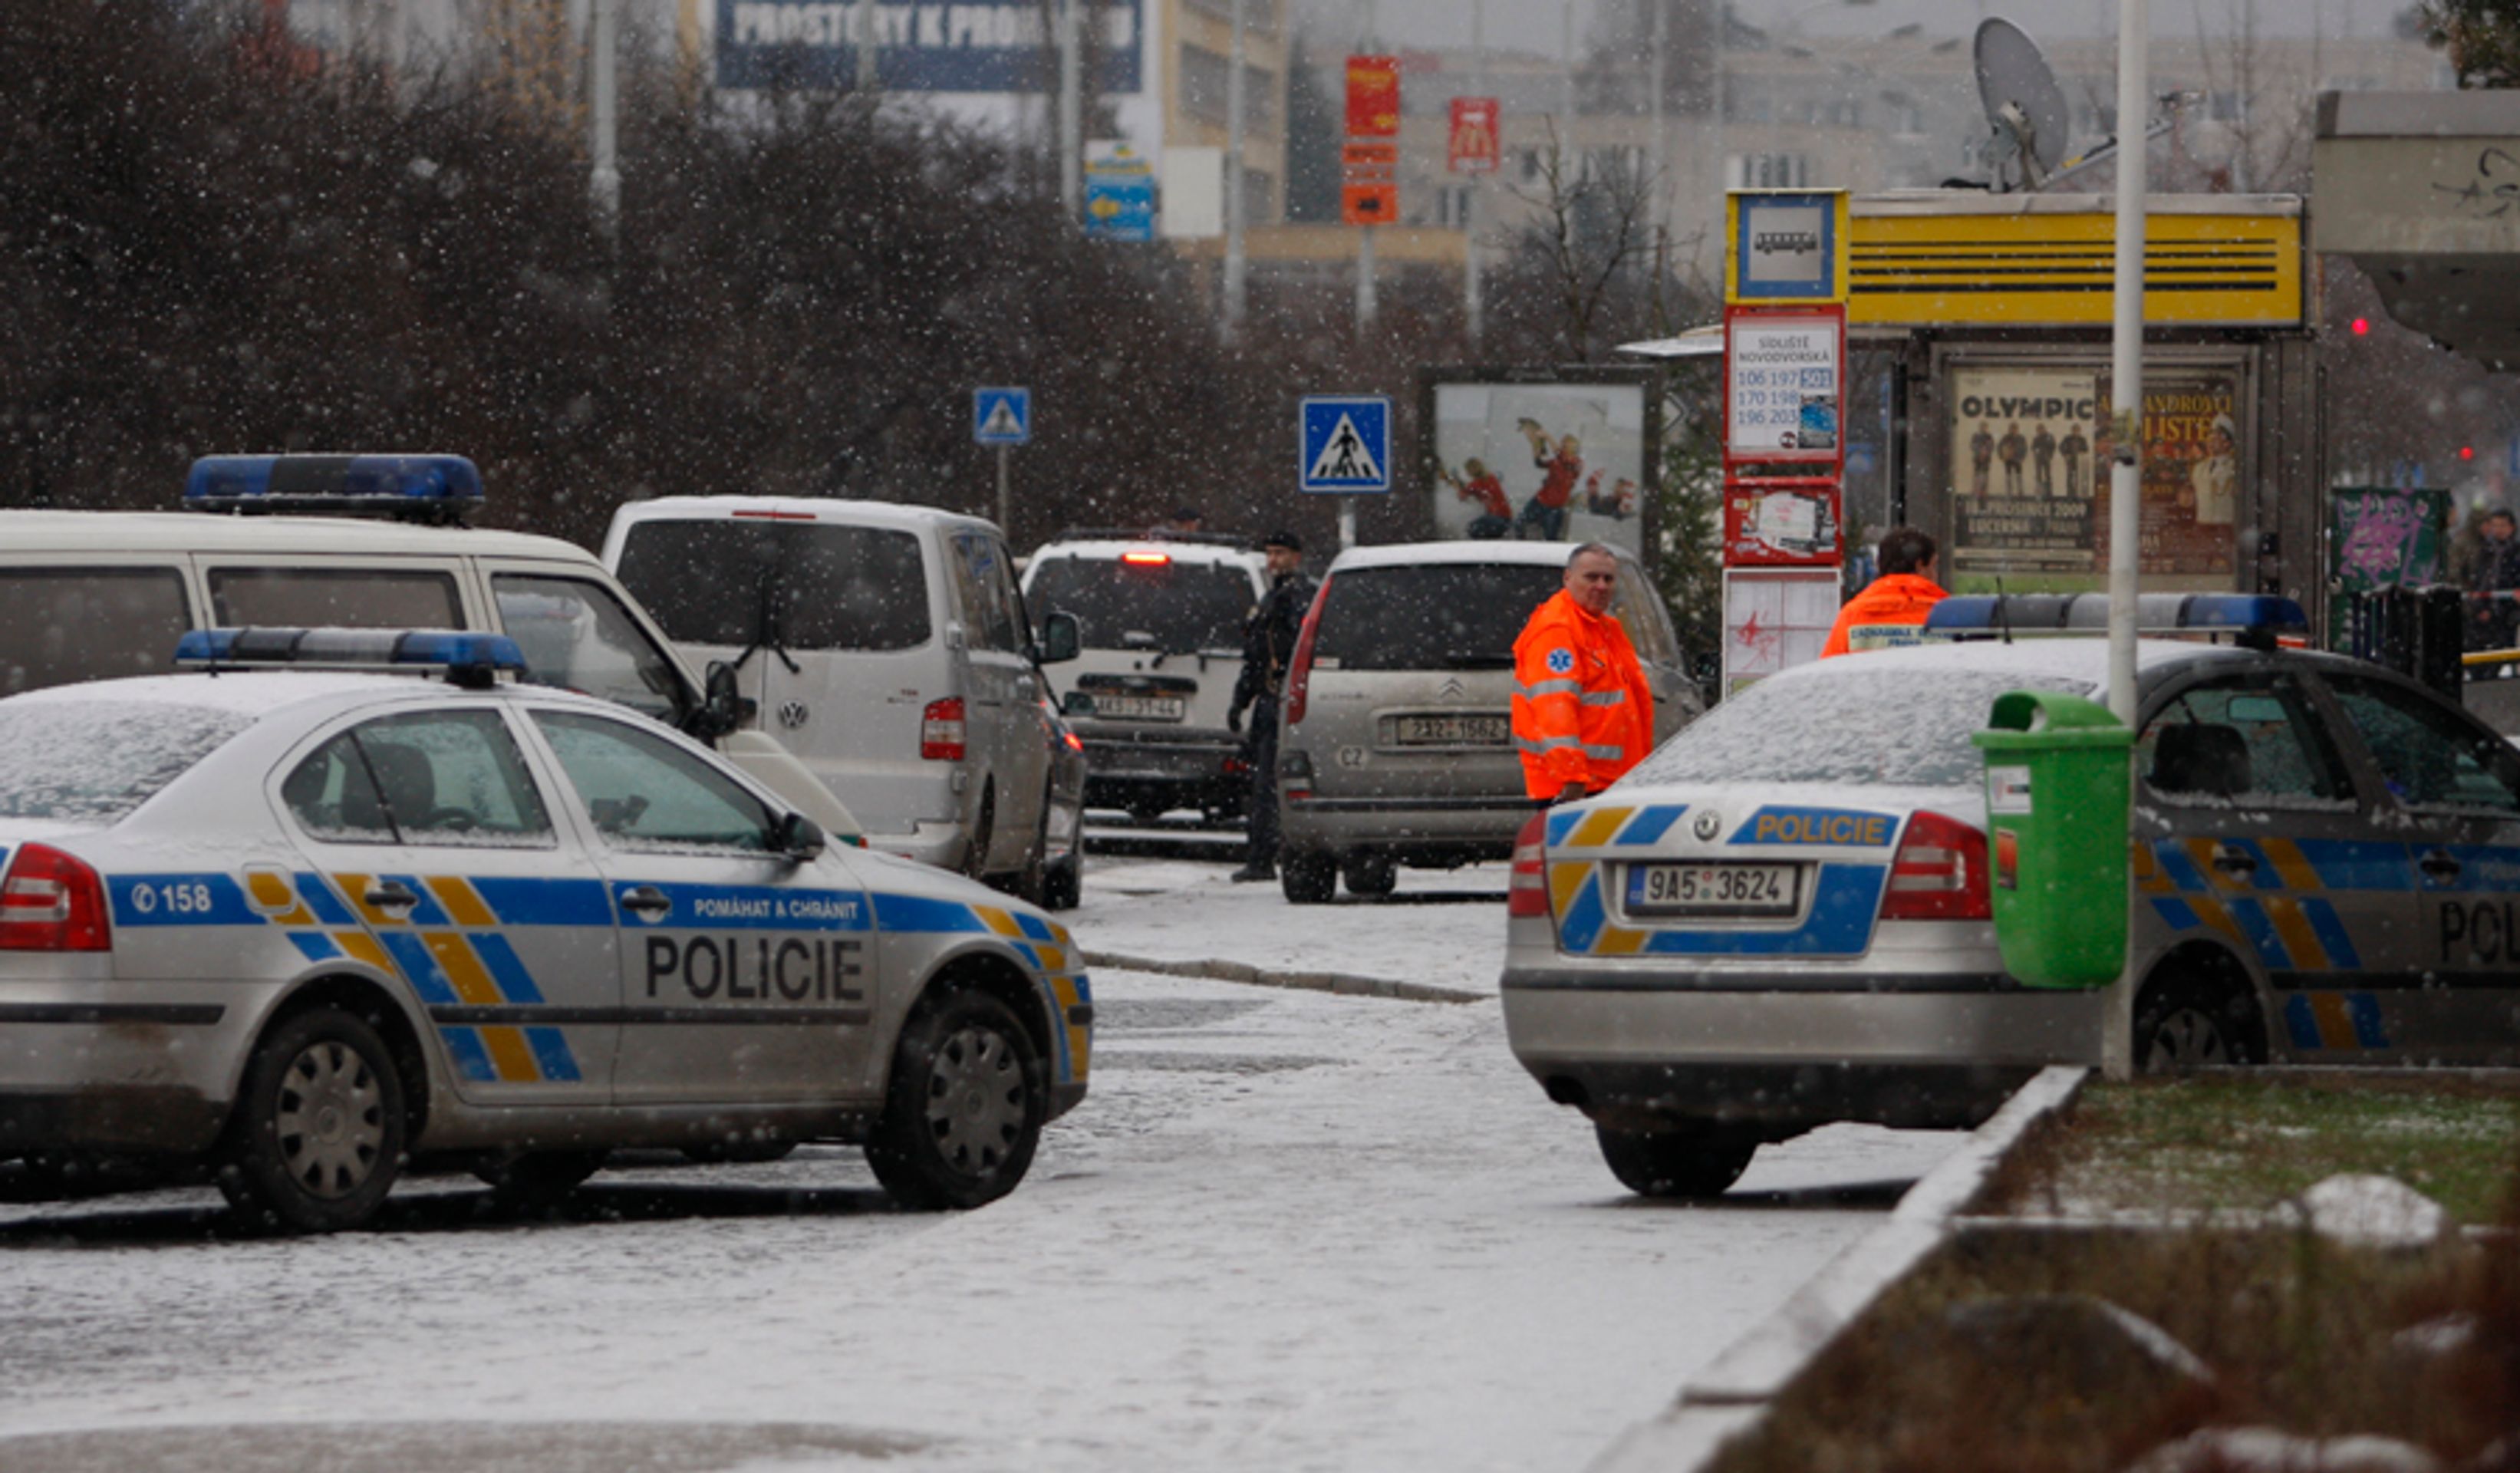 Zadržení muže, který přepadl banku a držel v ní 2 ženy-2 - GALERIE: Přepadení banky na Novodvorské (13/14)